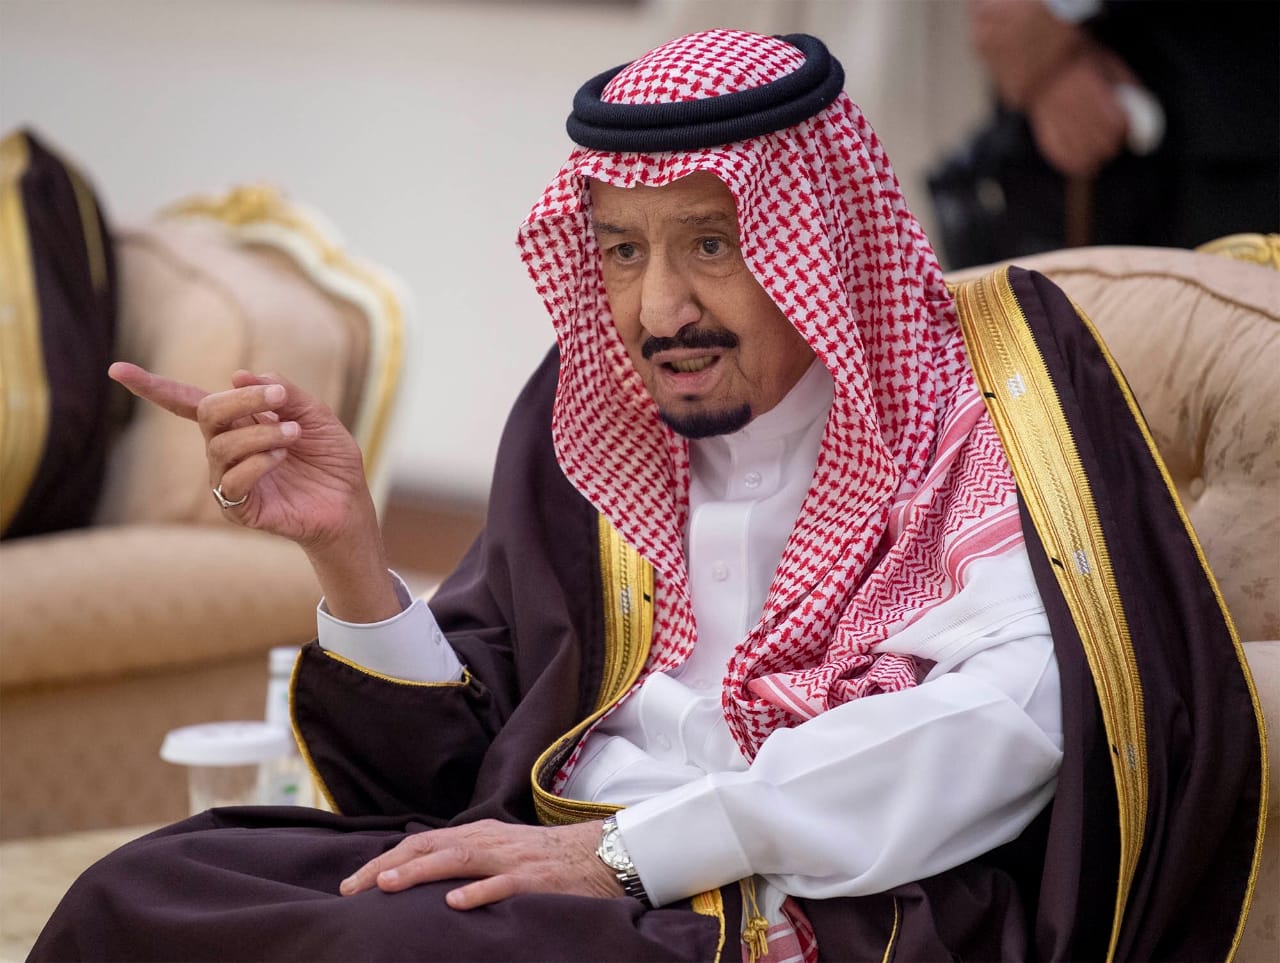 “الخارجية”: الملك سلمان يدعو لعقد قمتين خليجية وعربية طارئة في مكة المكرمة